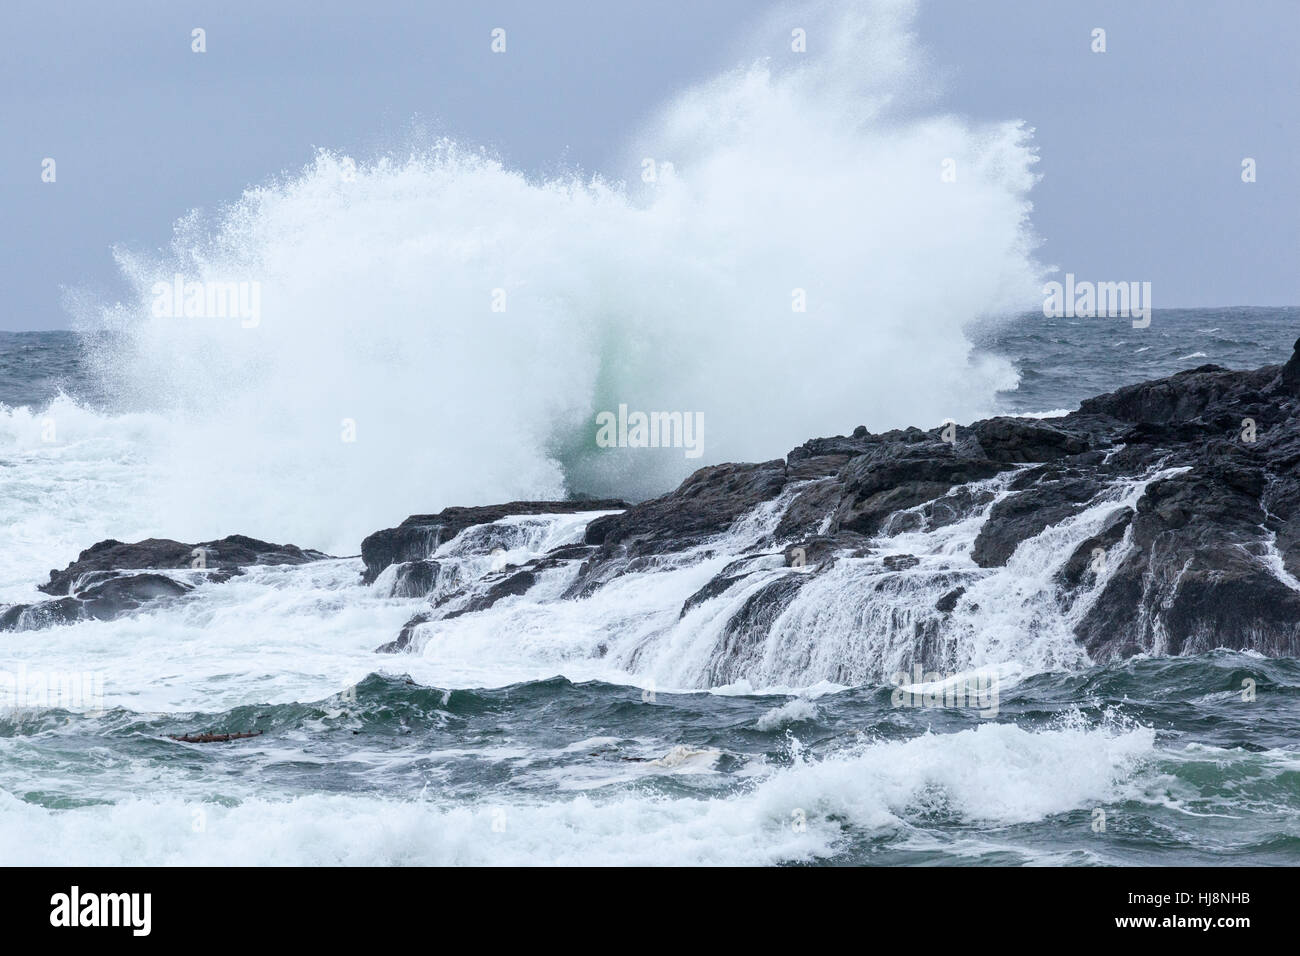 Waves crashing on rocks, Ucluelet, British Columbia, Canada Stock Photo